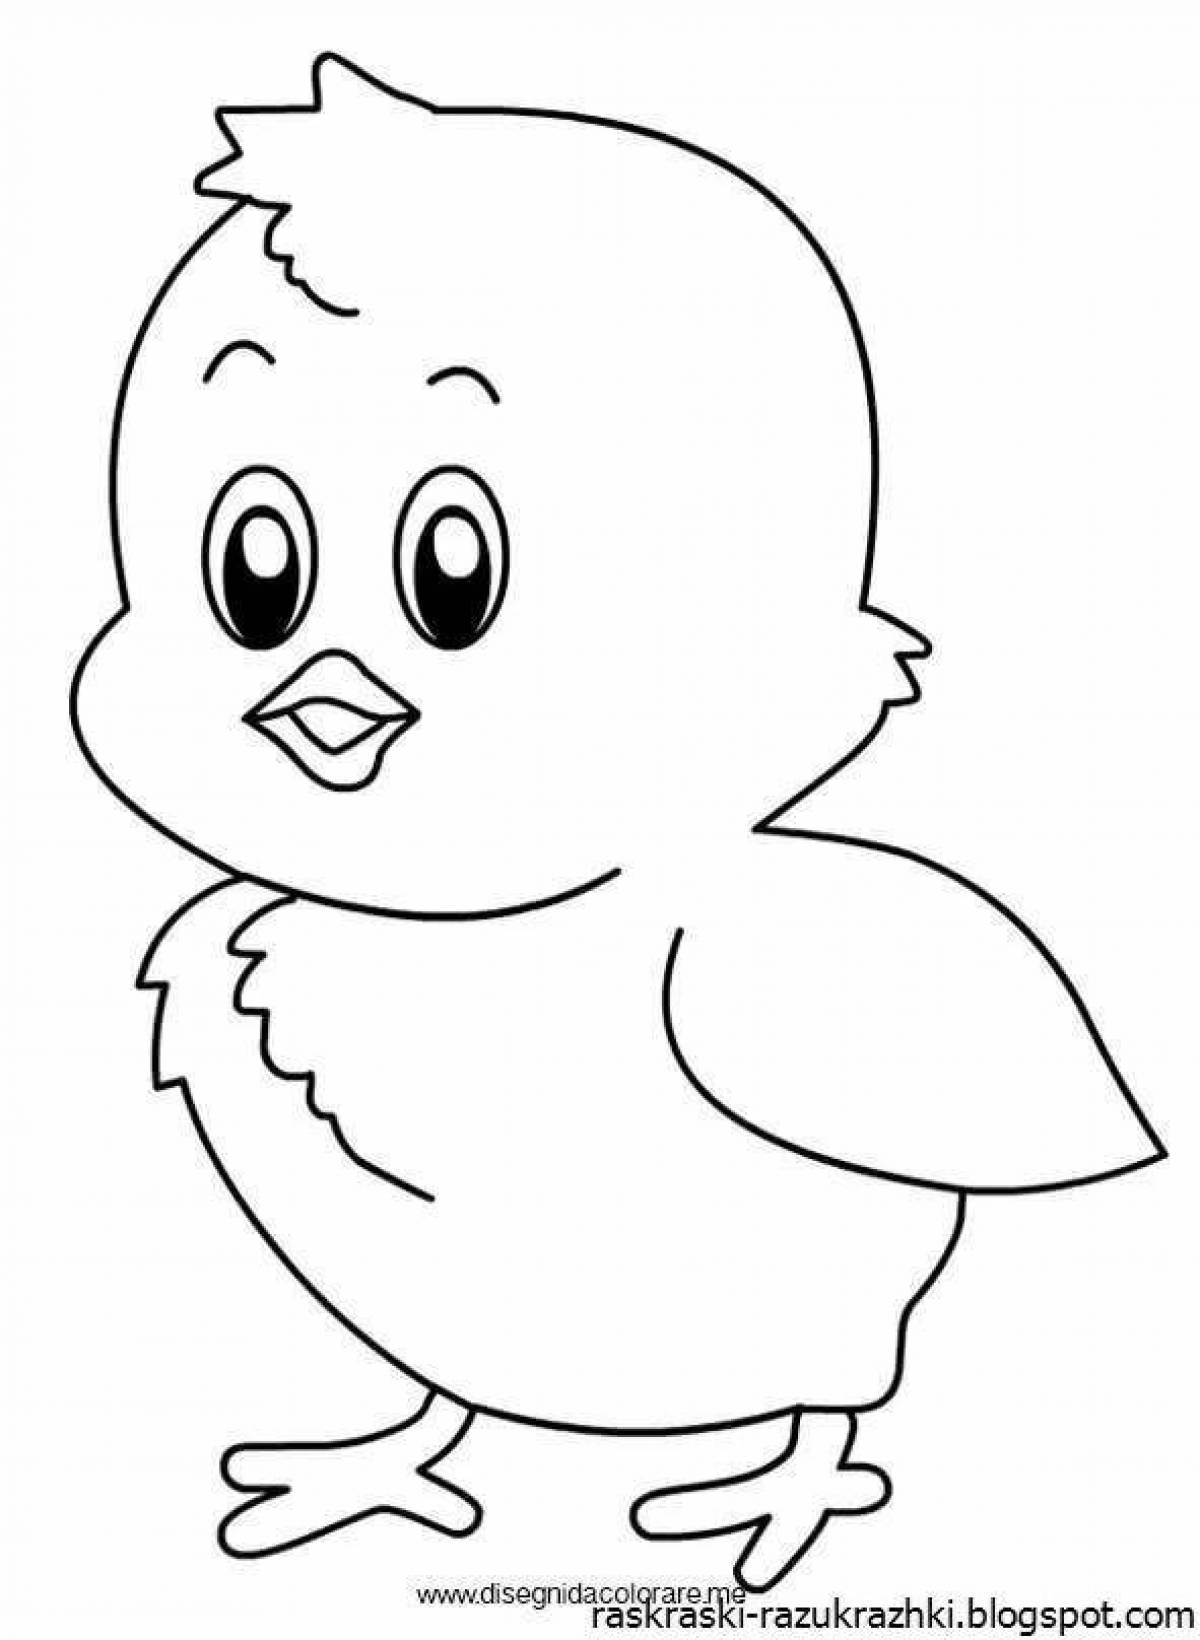 Анимированная страница раскраски цыплят для детей 3-4 лет